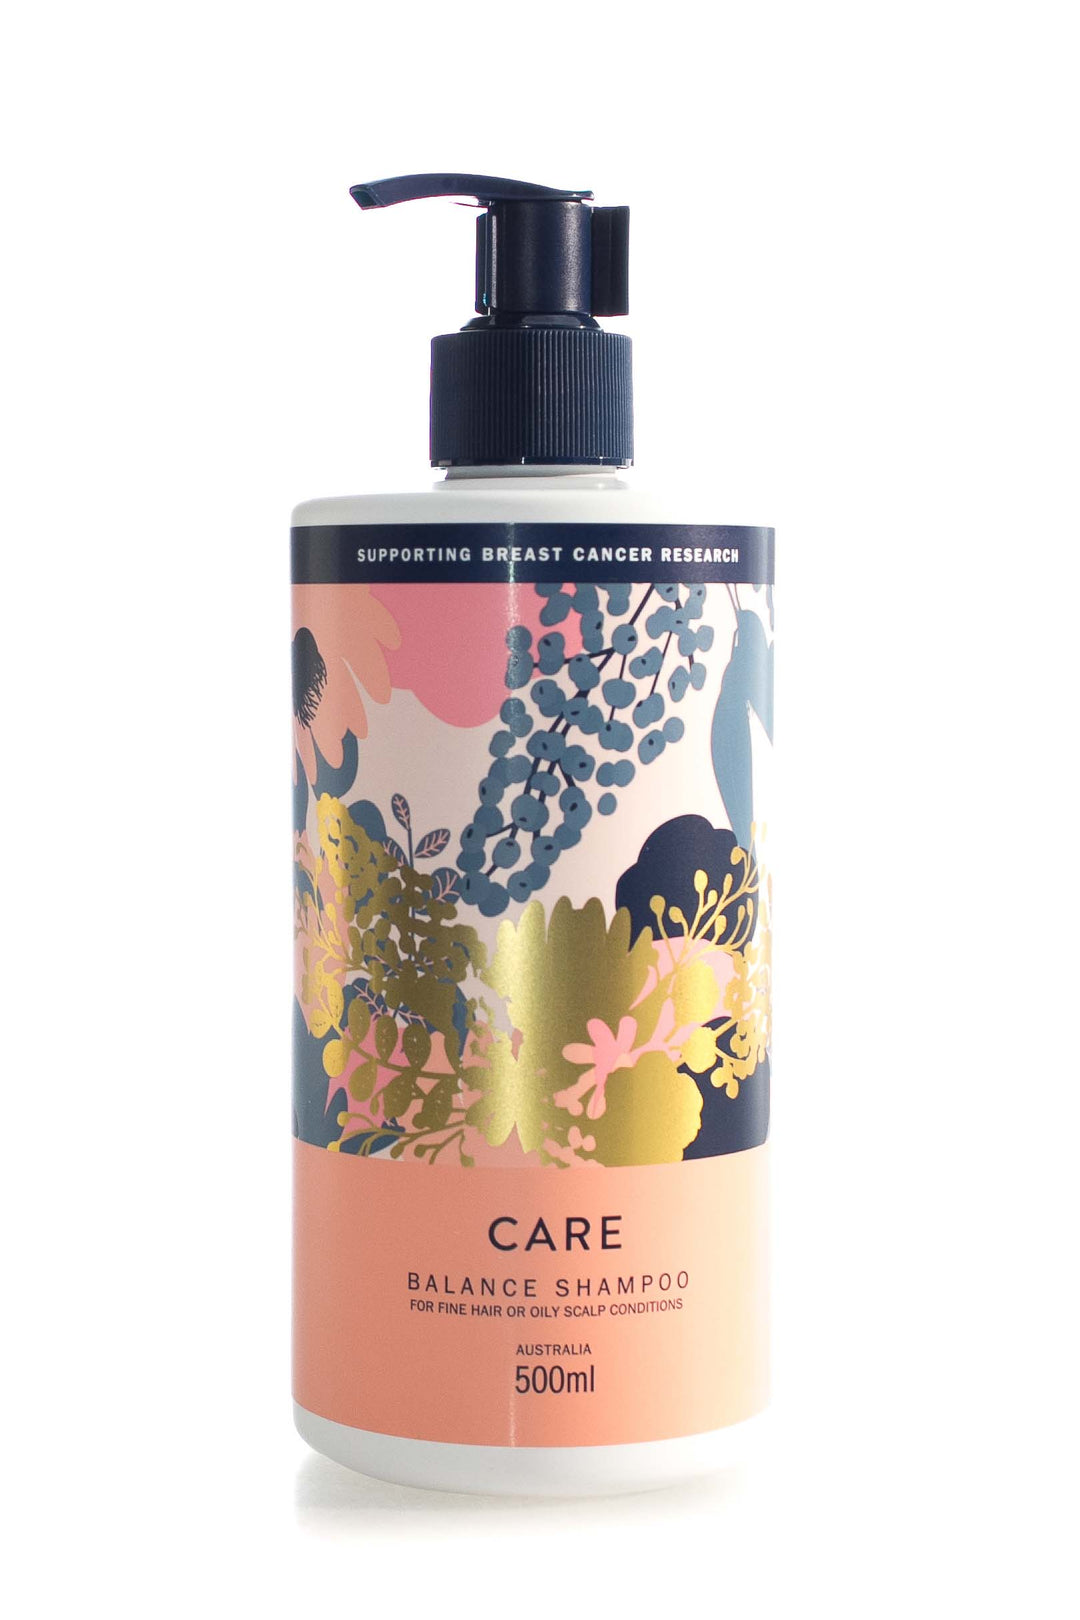 nak-hair-care-balance-shampoo-500ml